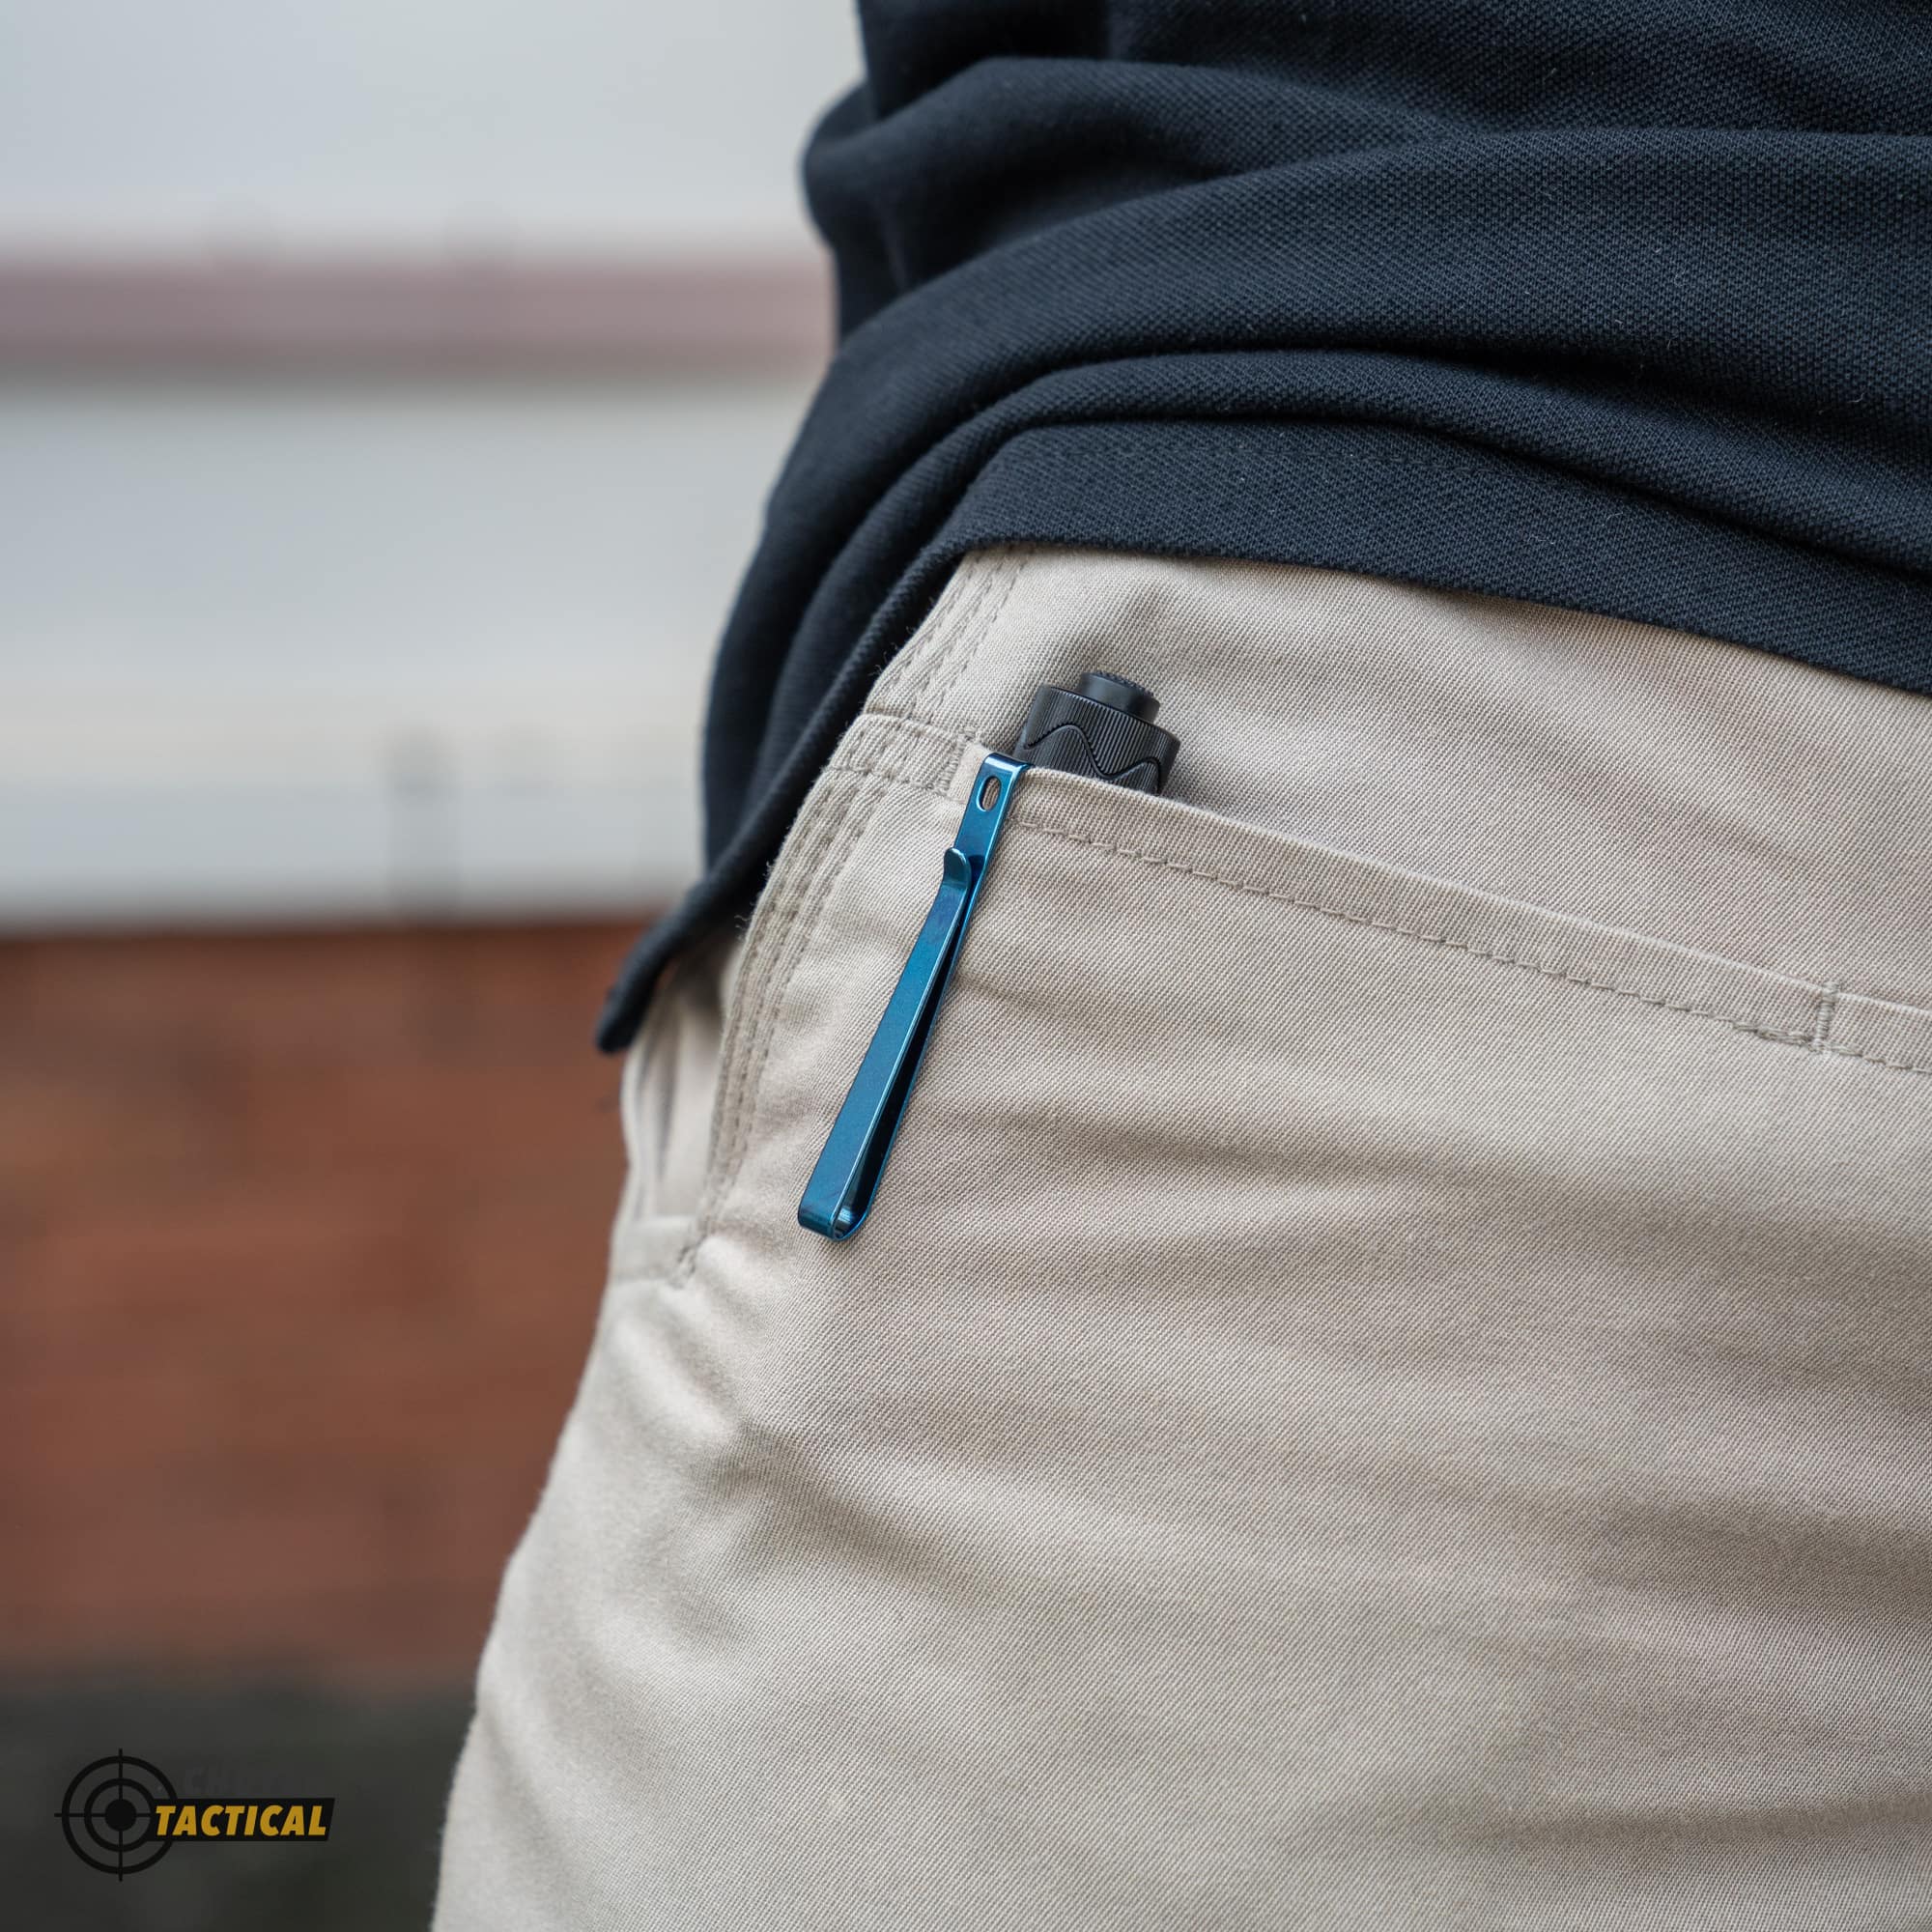 Đèn pin Olight I5R EOS nhỏ gọn, dễ dàng ẩn mình trong túi quần của bạn.